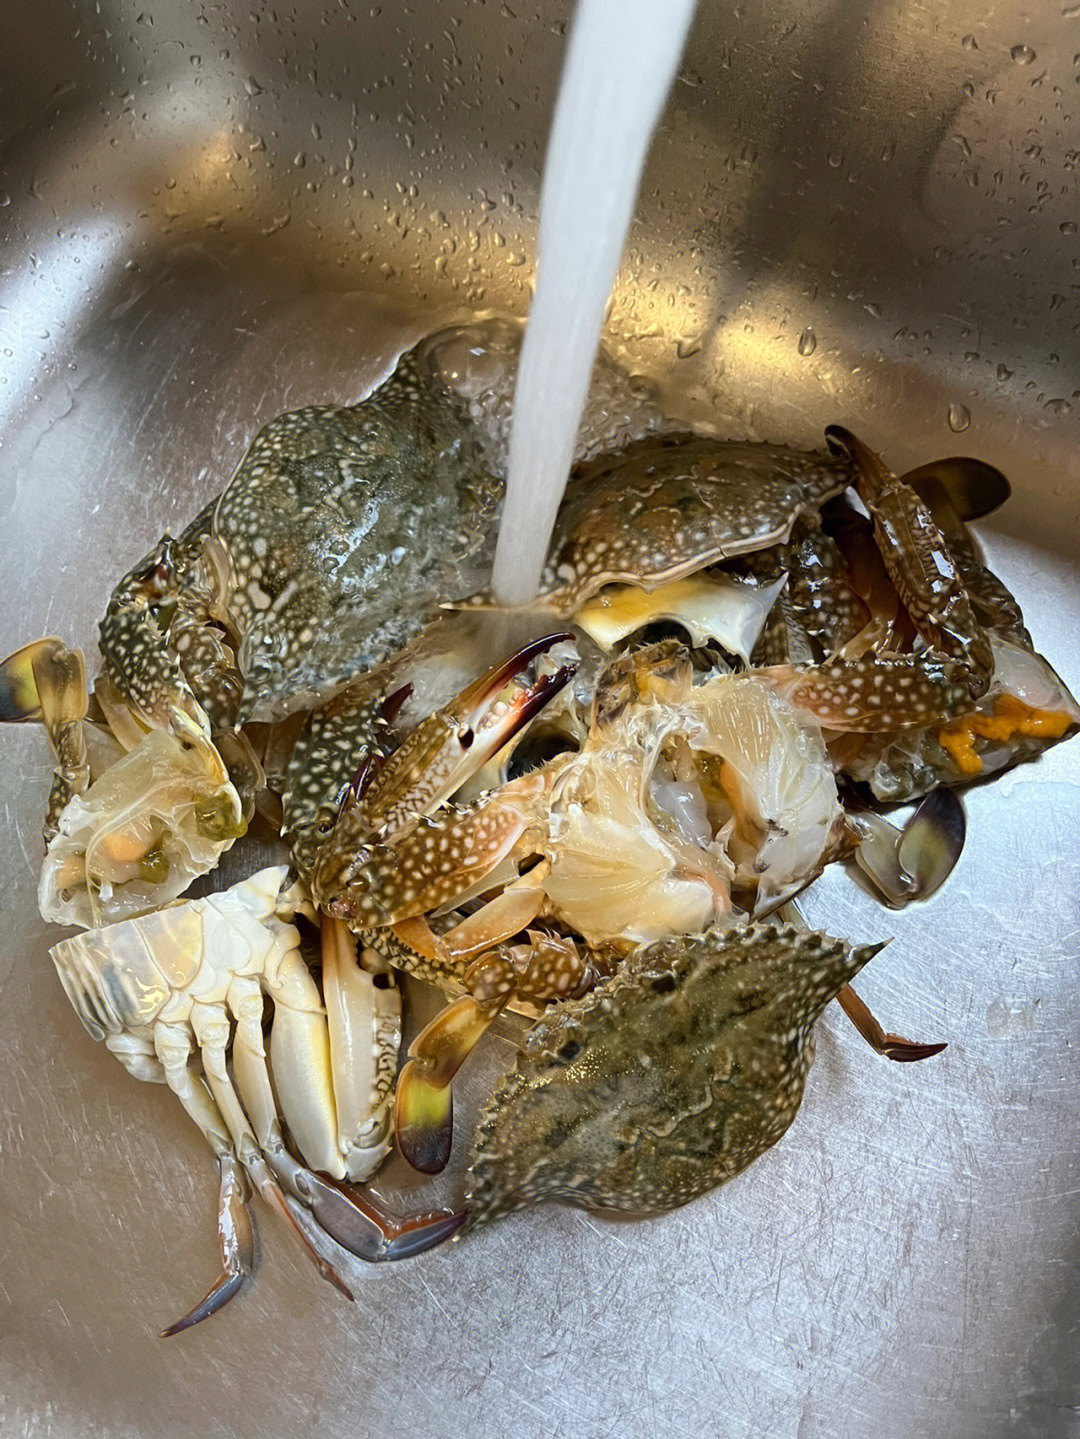 好久没吃螃蟹了0215,今天吃姜葱兰花蟹0215,超级鲜的味道,一